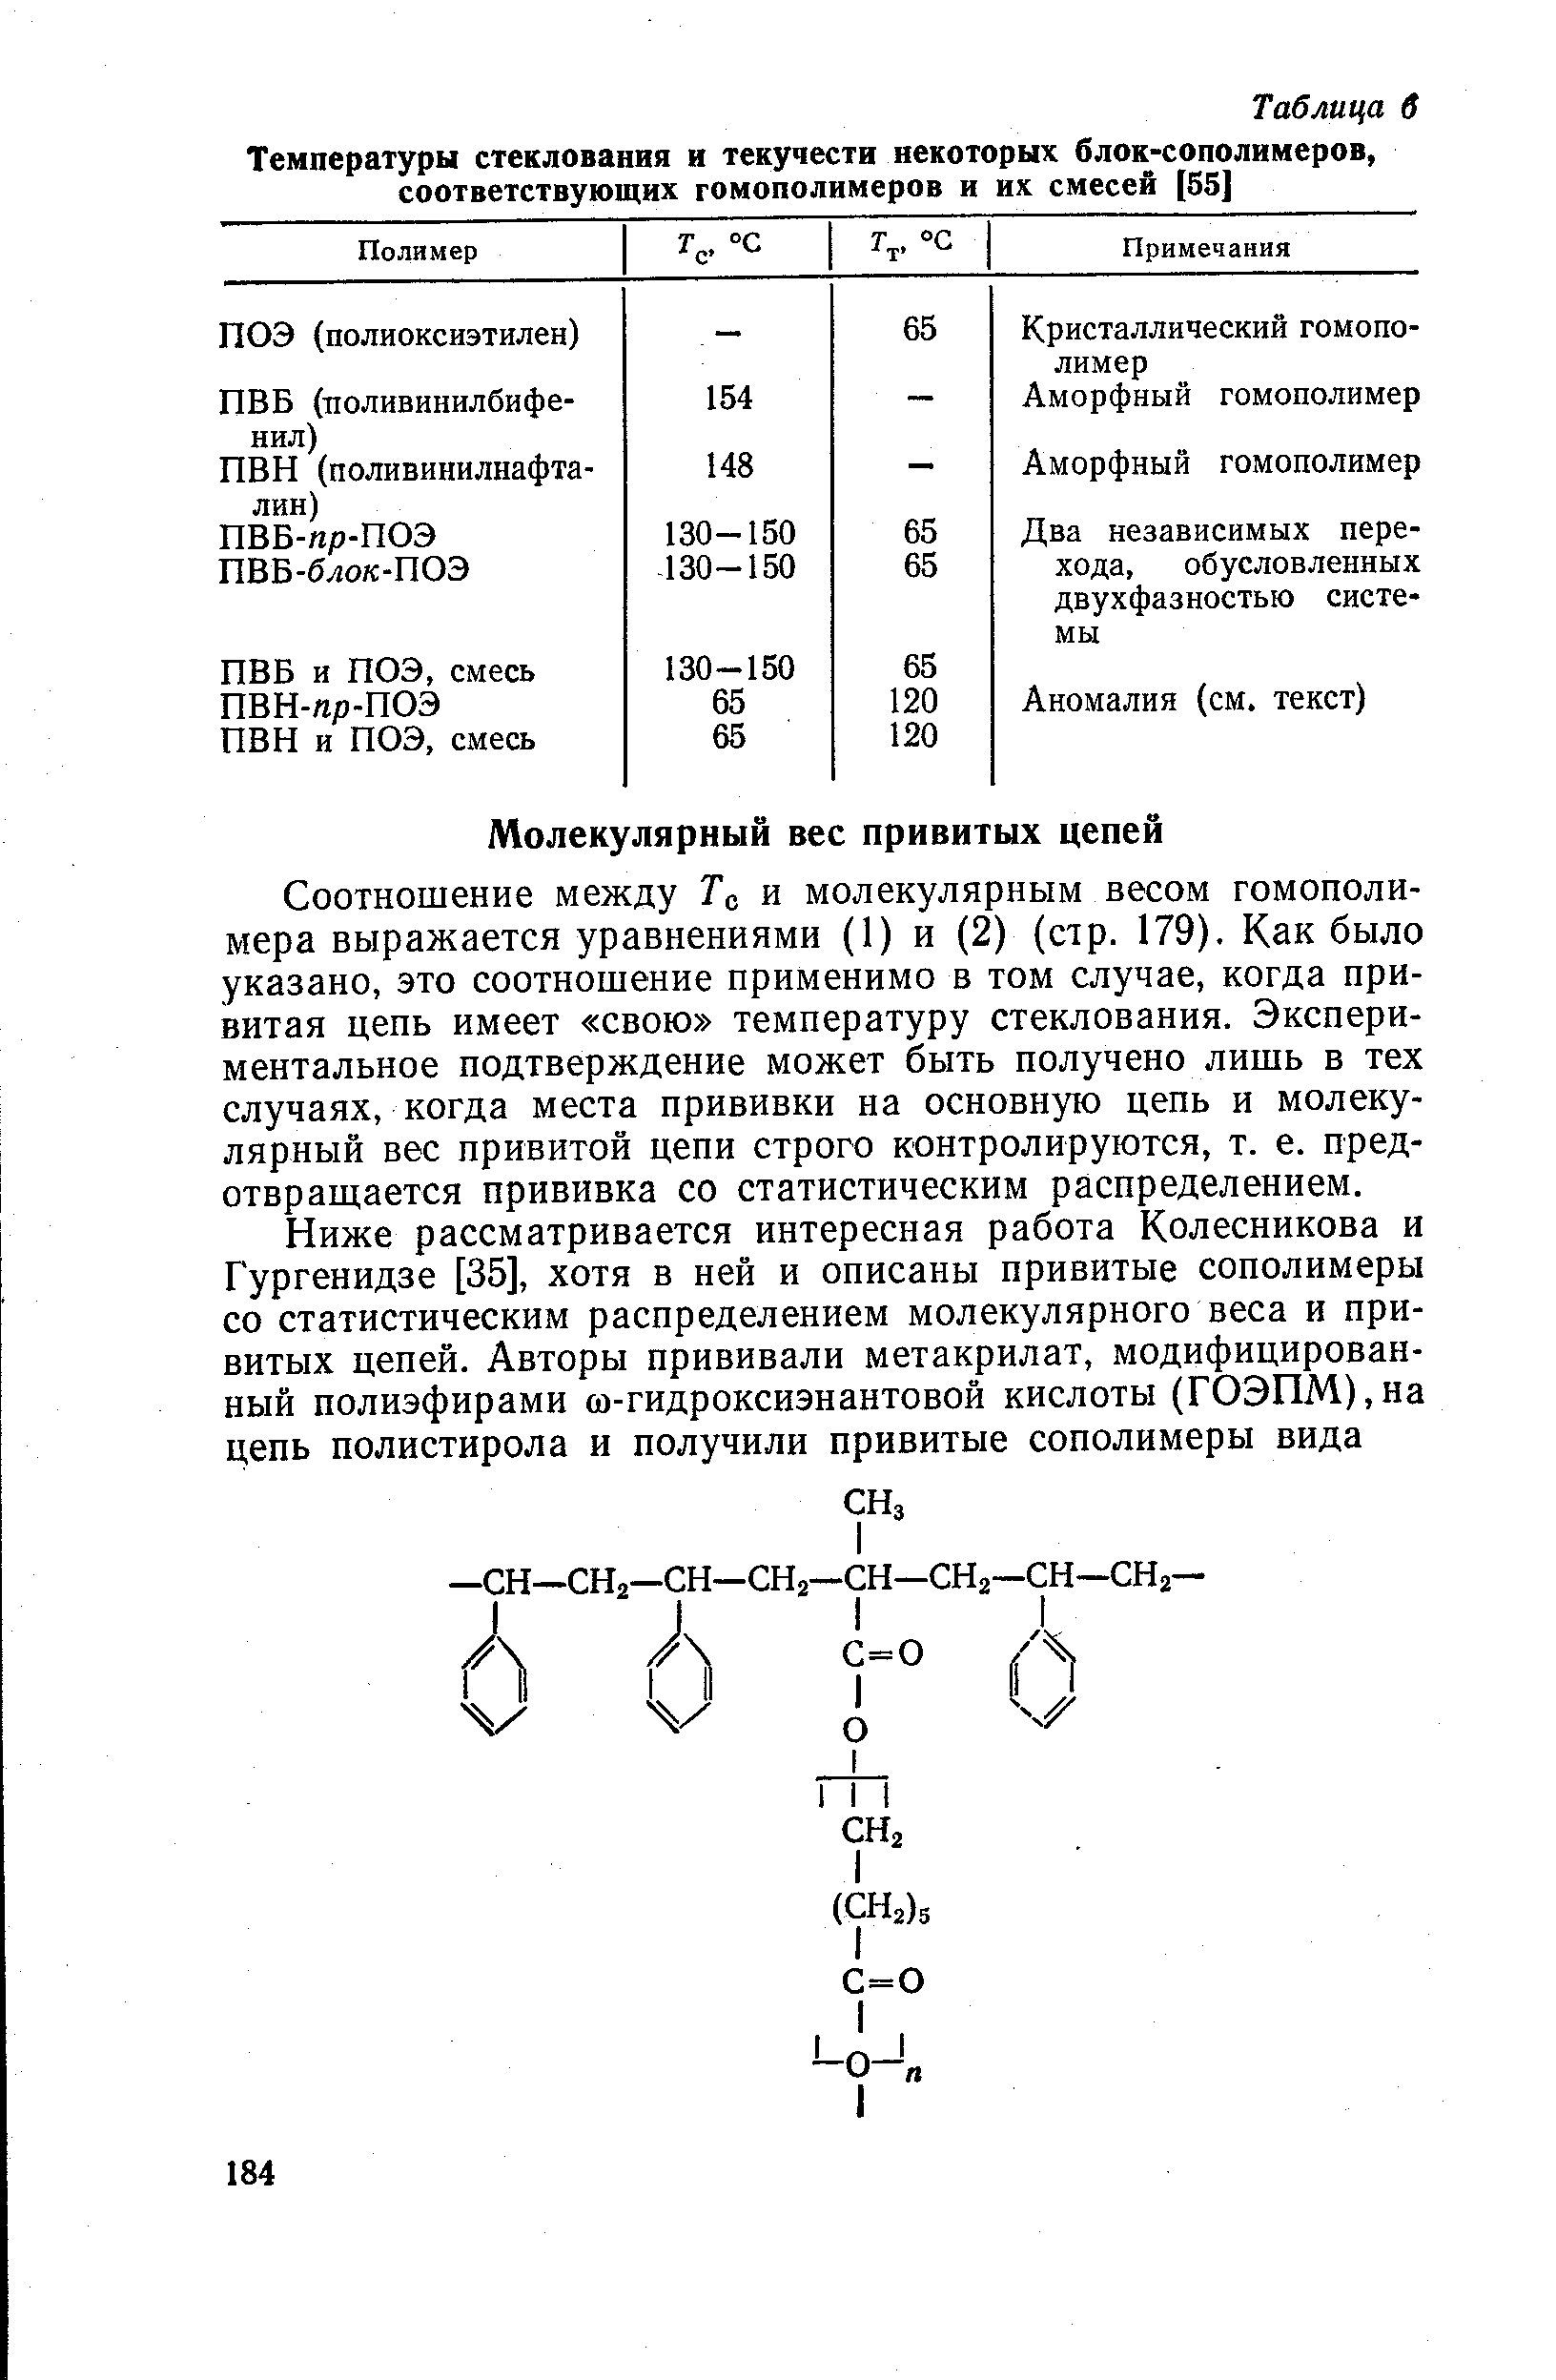 Соотношение между То и молекулярным весом гомополимера выражается уравнениями (1) и (2) (стр. 179). Как было указано, это соотношение применимо в том случае, когда привитая цепь имеет свою температуру стеклования. Экспериментальное подтверждение может быть получено лишь в тех случаях, когда места прививки на основную цепь и молекулярный вес привитой цепи строго контролируются, т. е. предотвращается прививка со статистическим распределением.